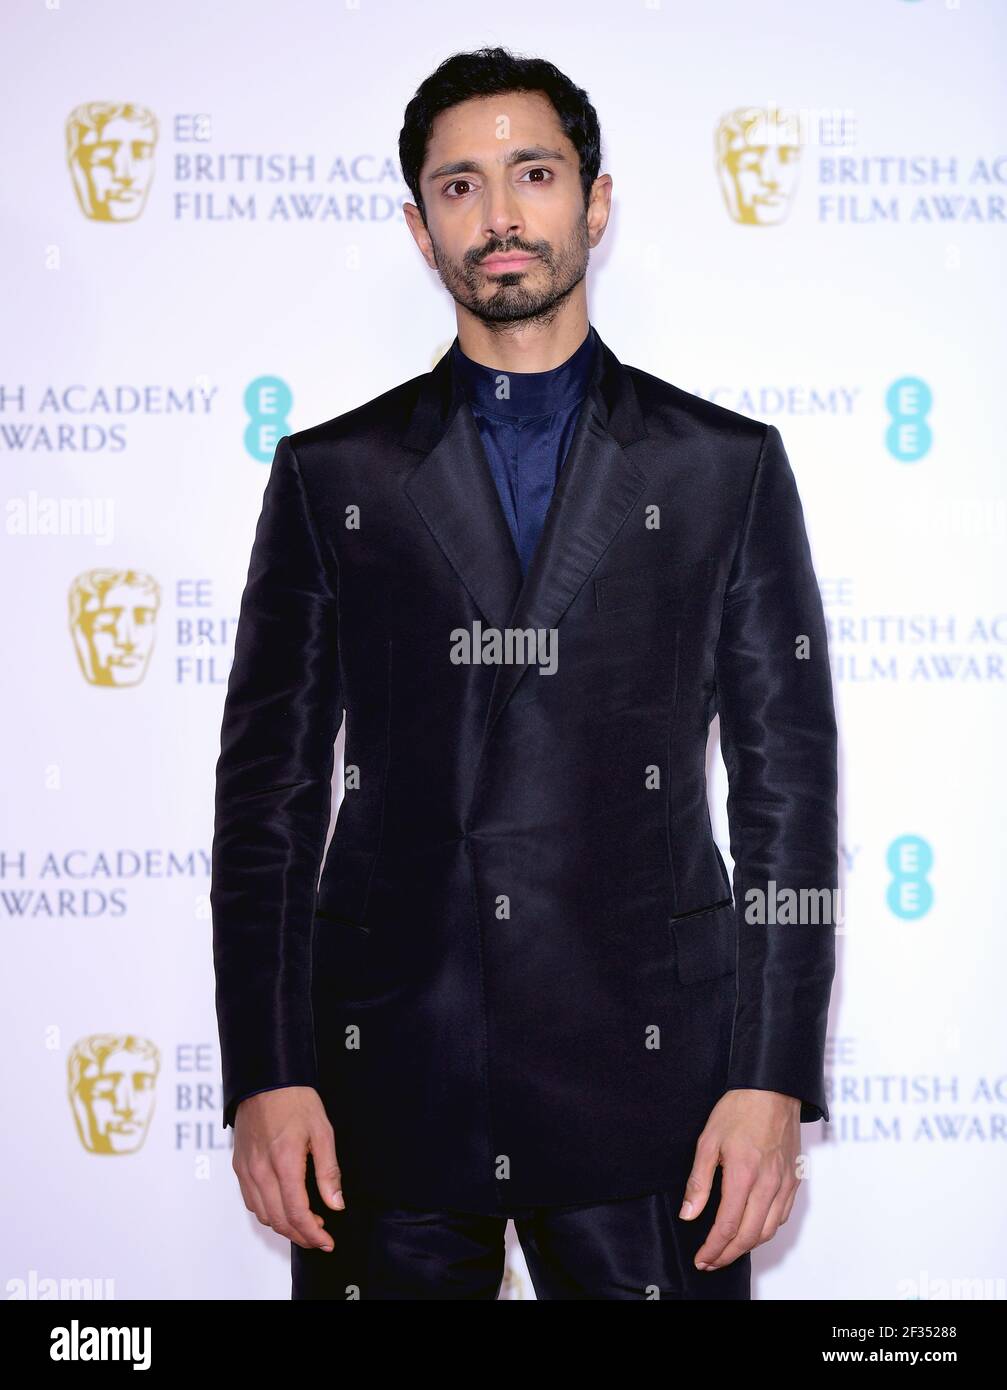 Datei Foto vom 10/02/19 von Riz Ahmed, der für den besten Schauspieler Oscar nominiert wurde. Ausgabedatum: Sonntag, 10. Februar 2019. Stockfoto